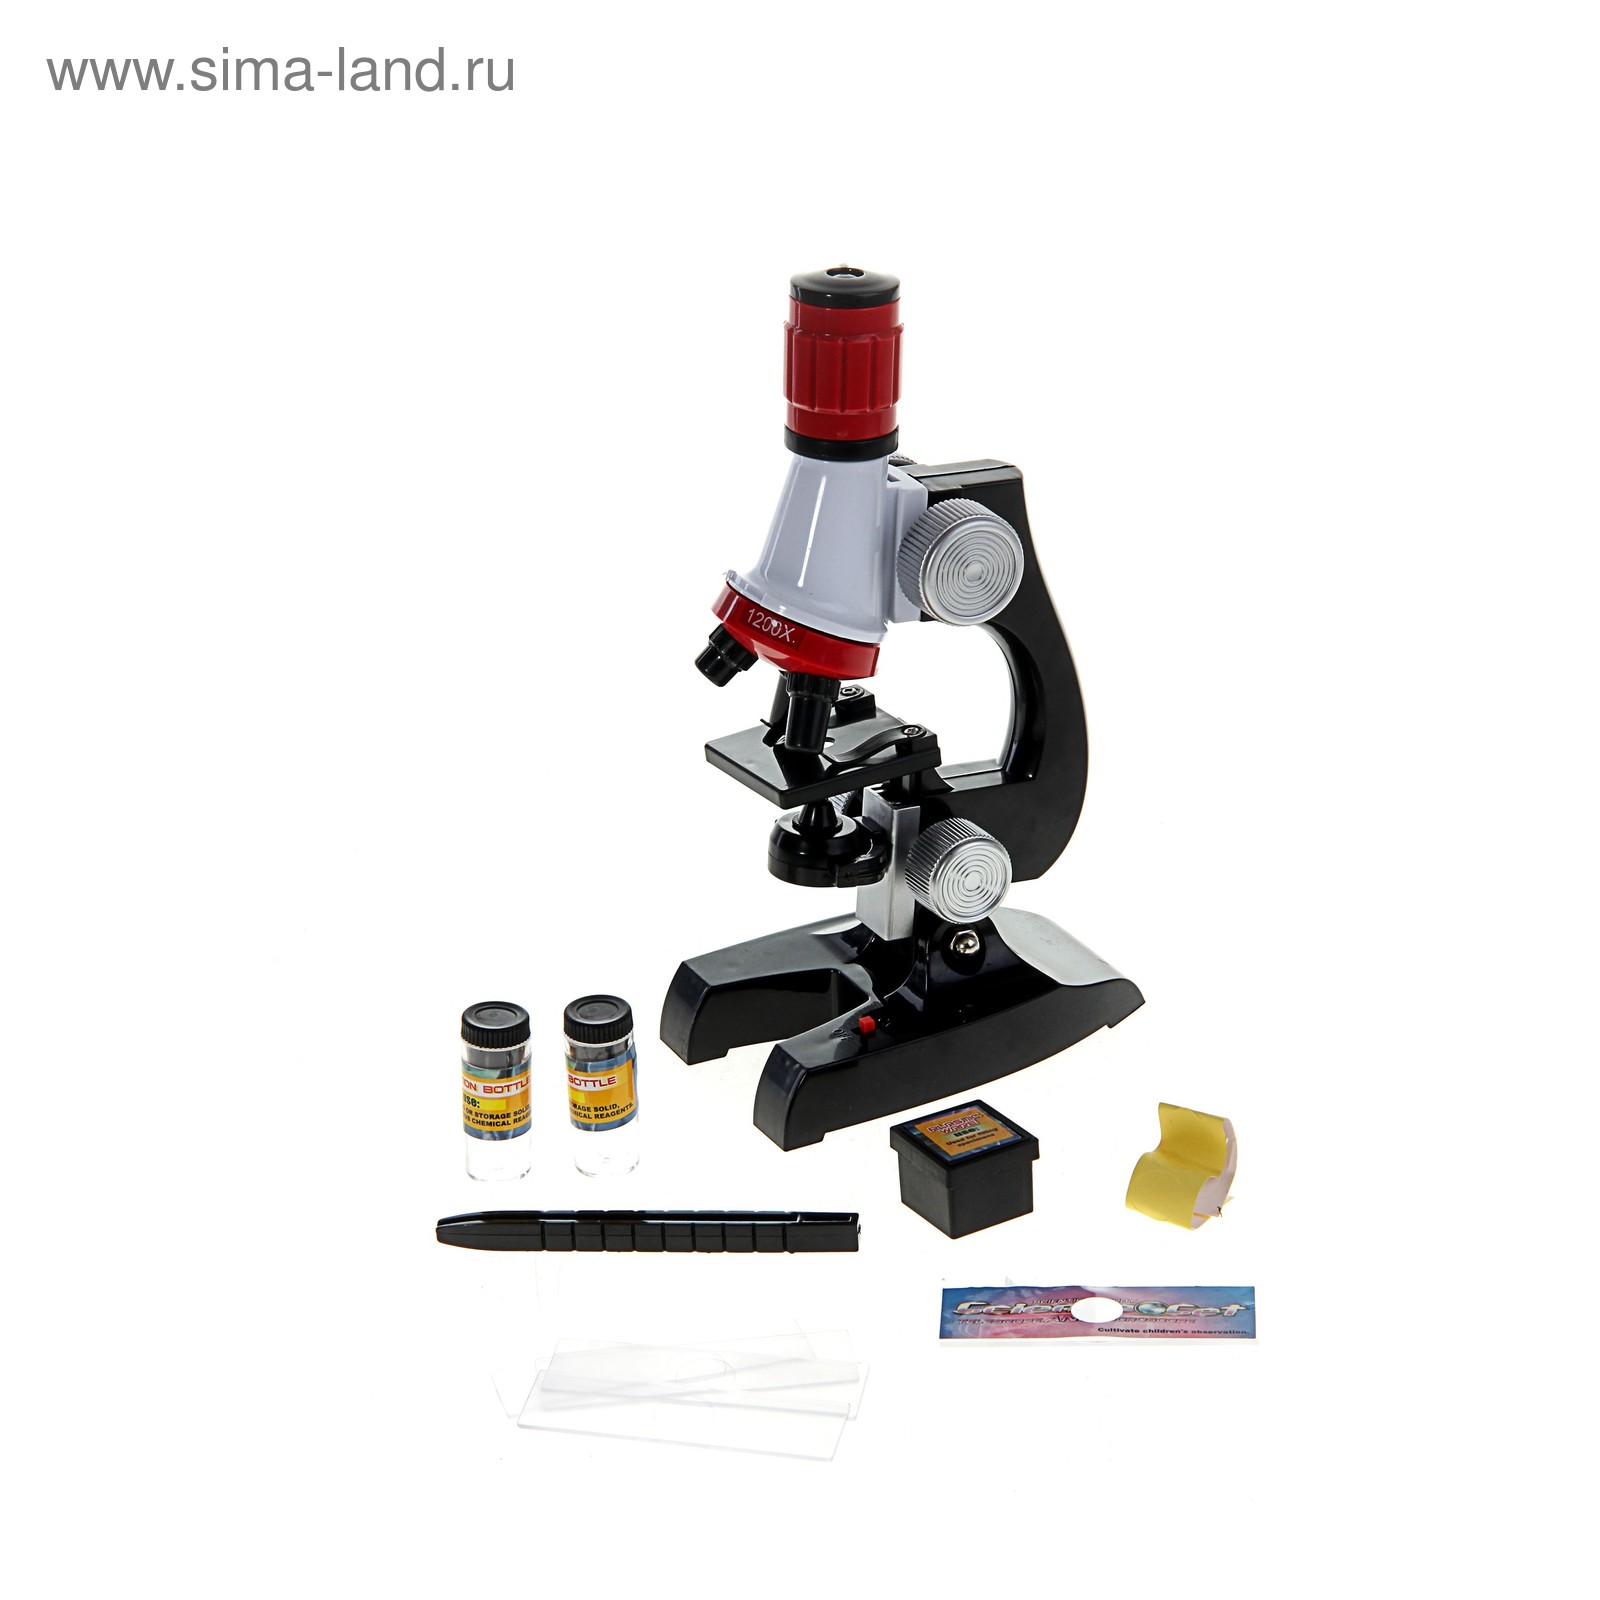 Микроскоп сувенирный "Школьный" 100х-400х-1200х, пинцет, 2 баночки, наклейки, 5 стекол